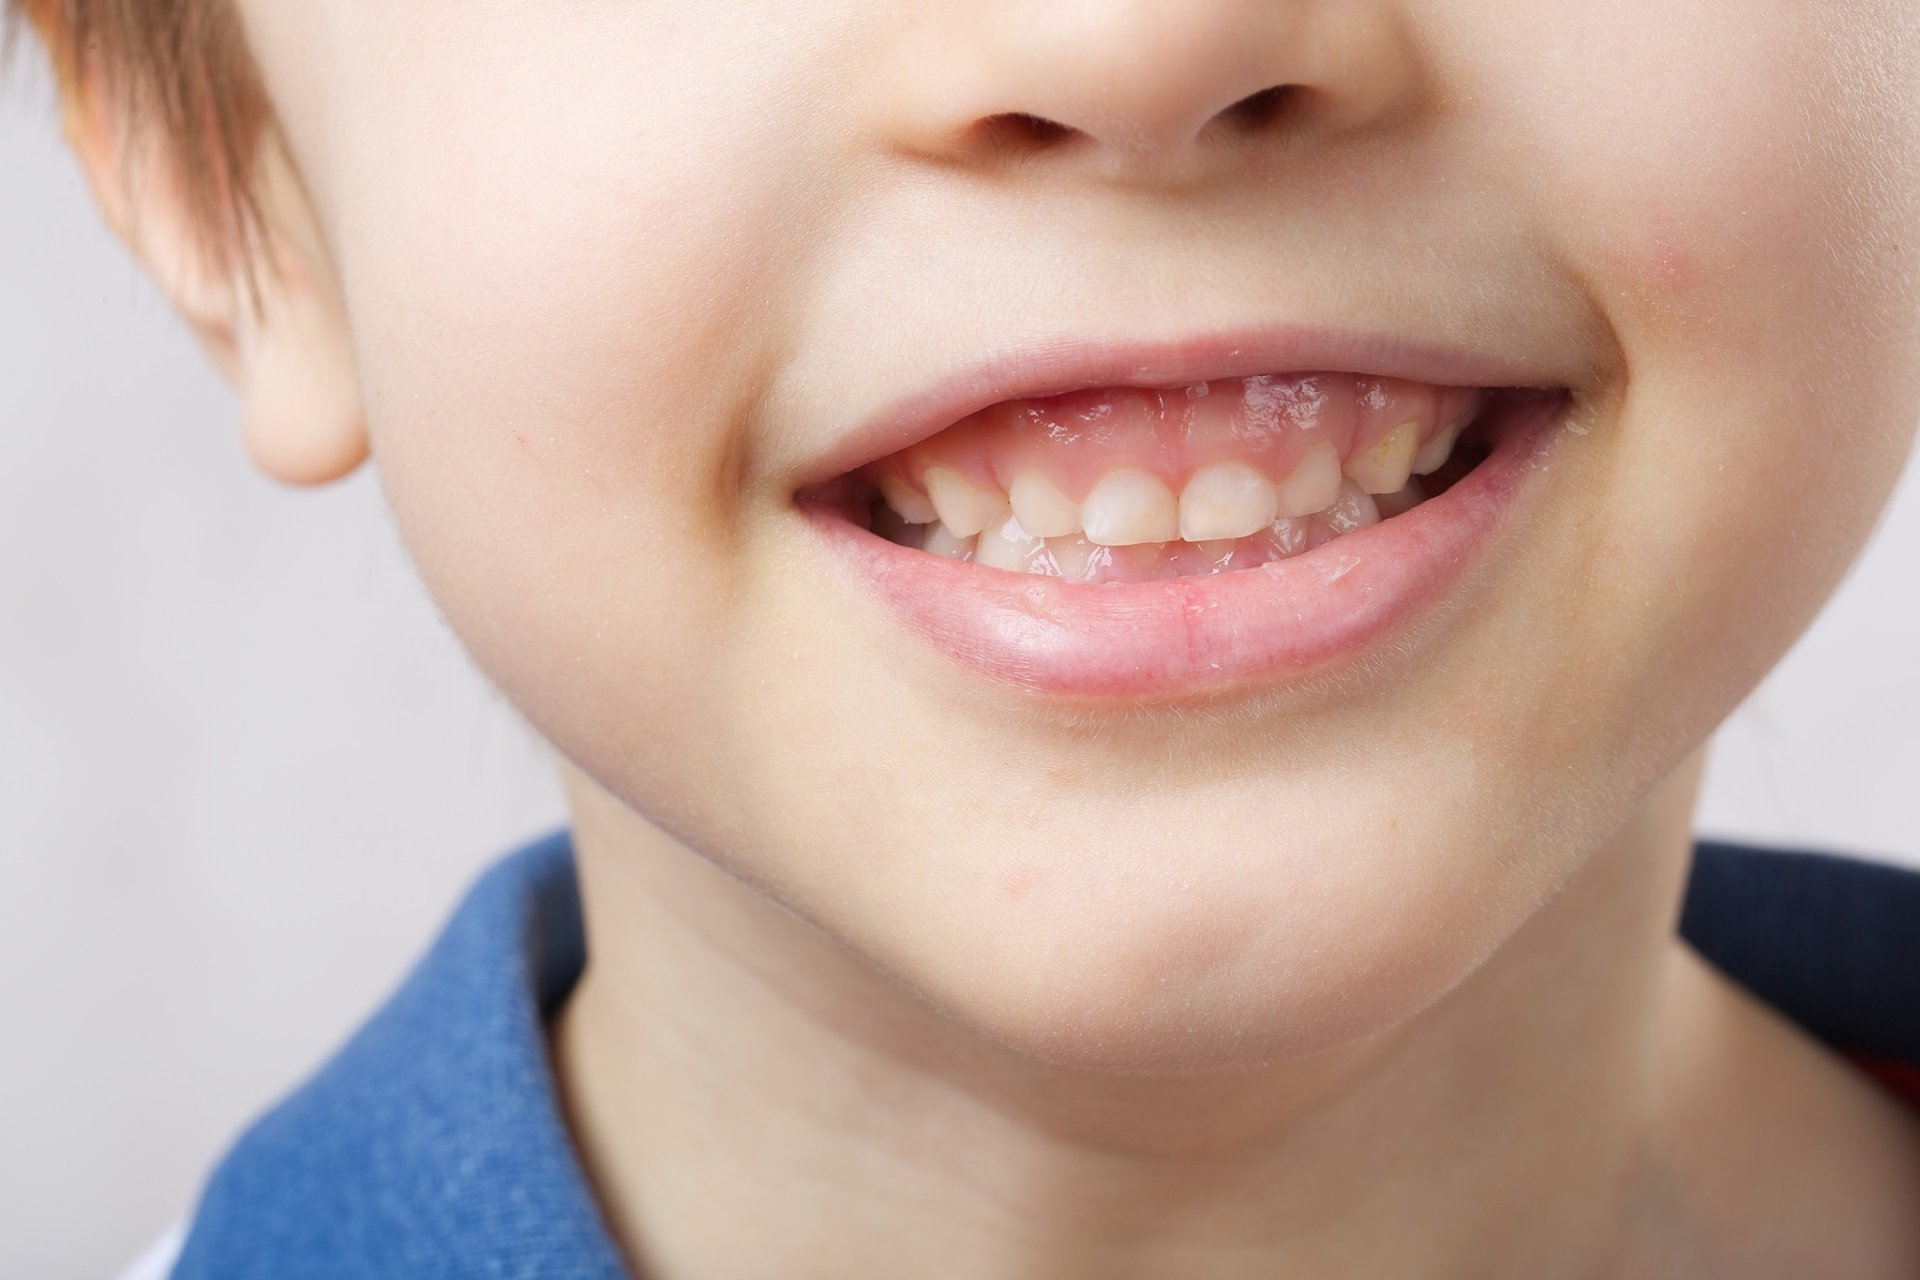 当产生蛀牙的时候,牙齿颜色会变的不均匀,蛀牙的部位会变成黑色或者